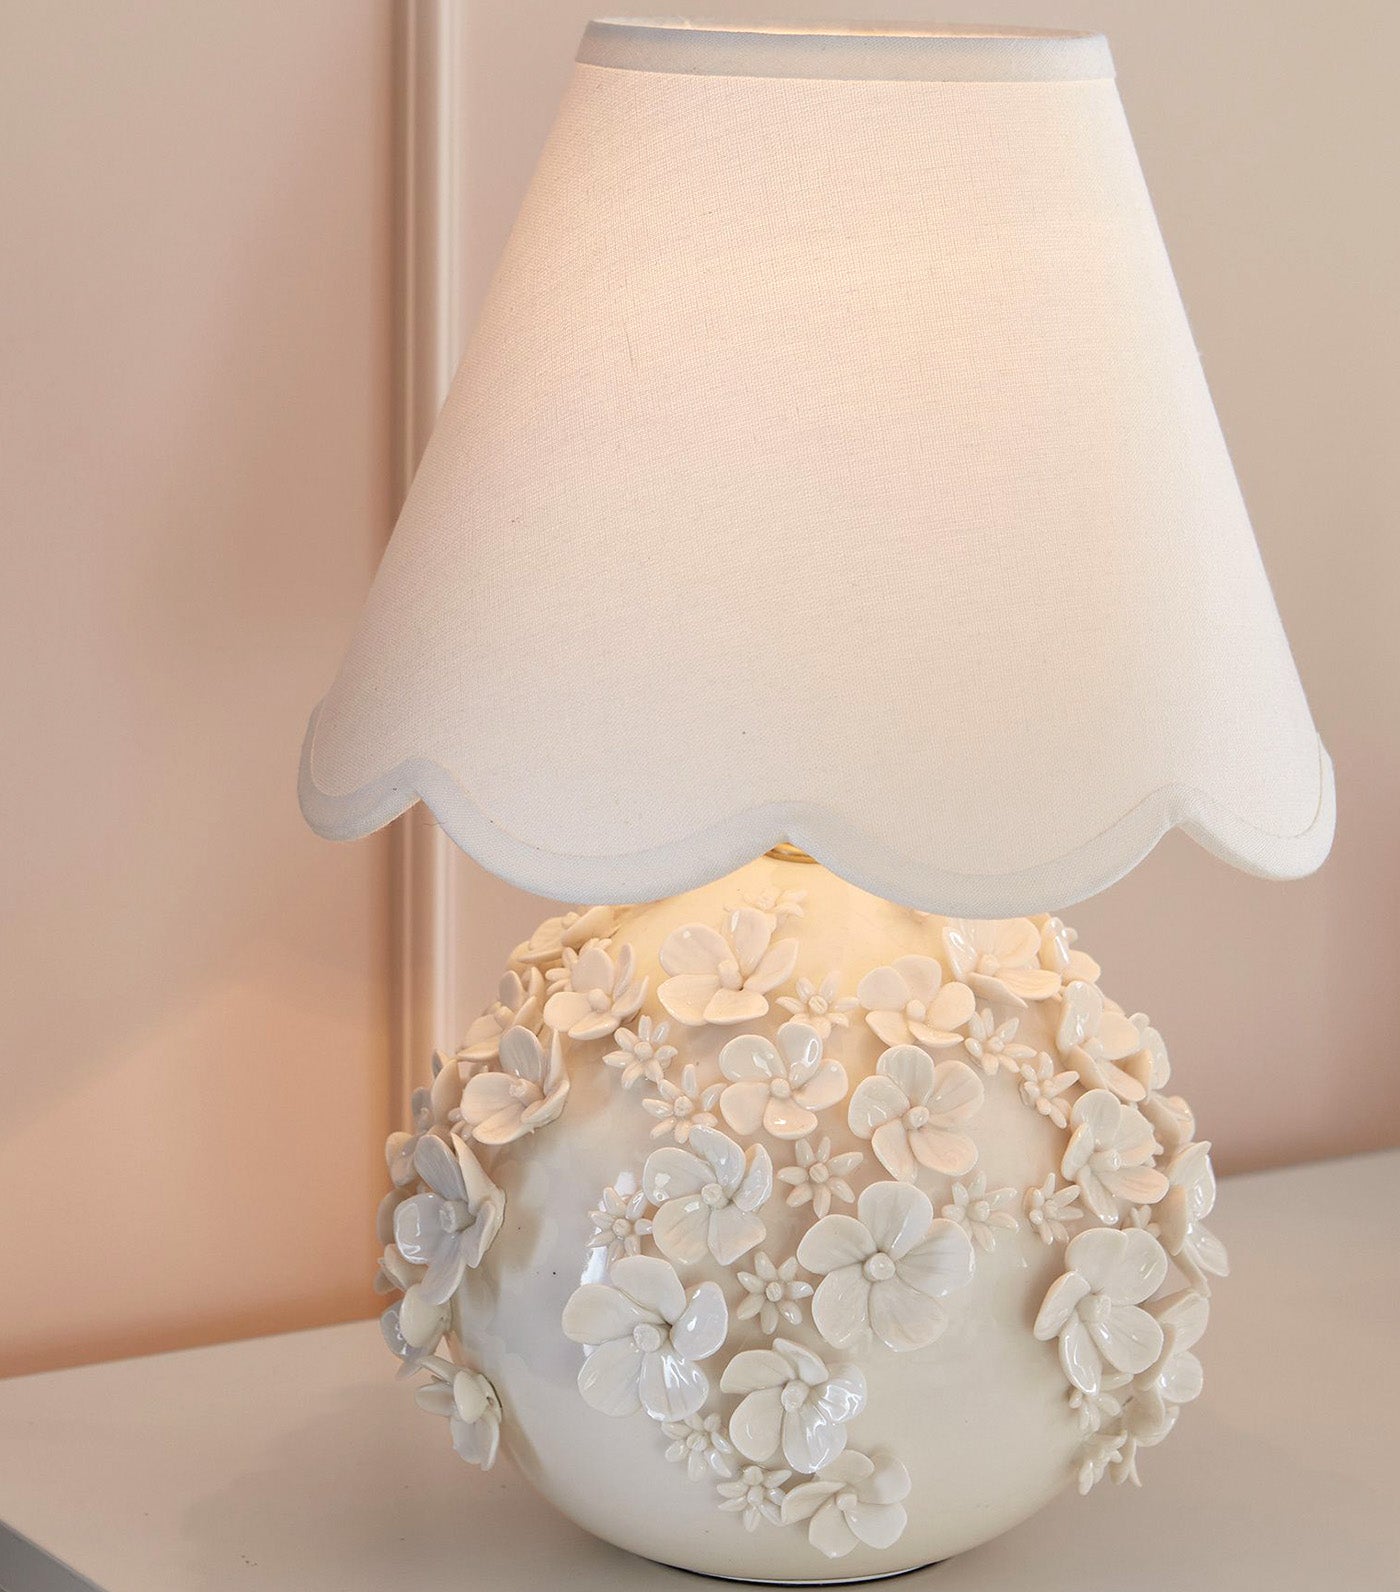 Monique Lhuillier Garden Texture Table Lamp